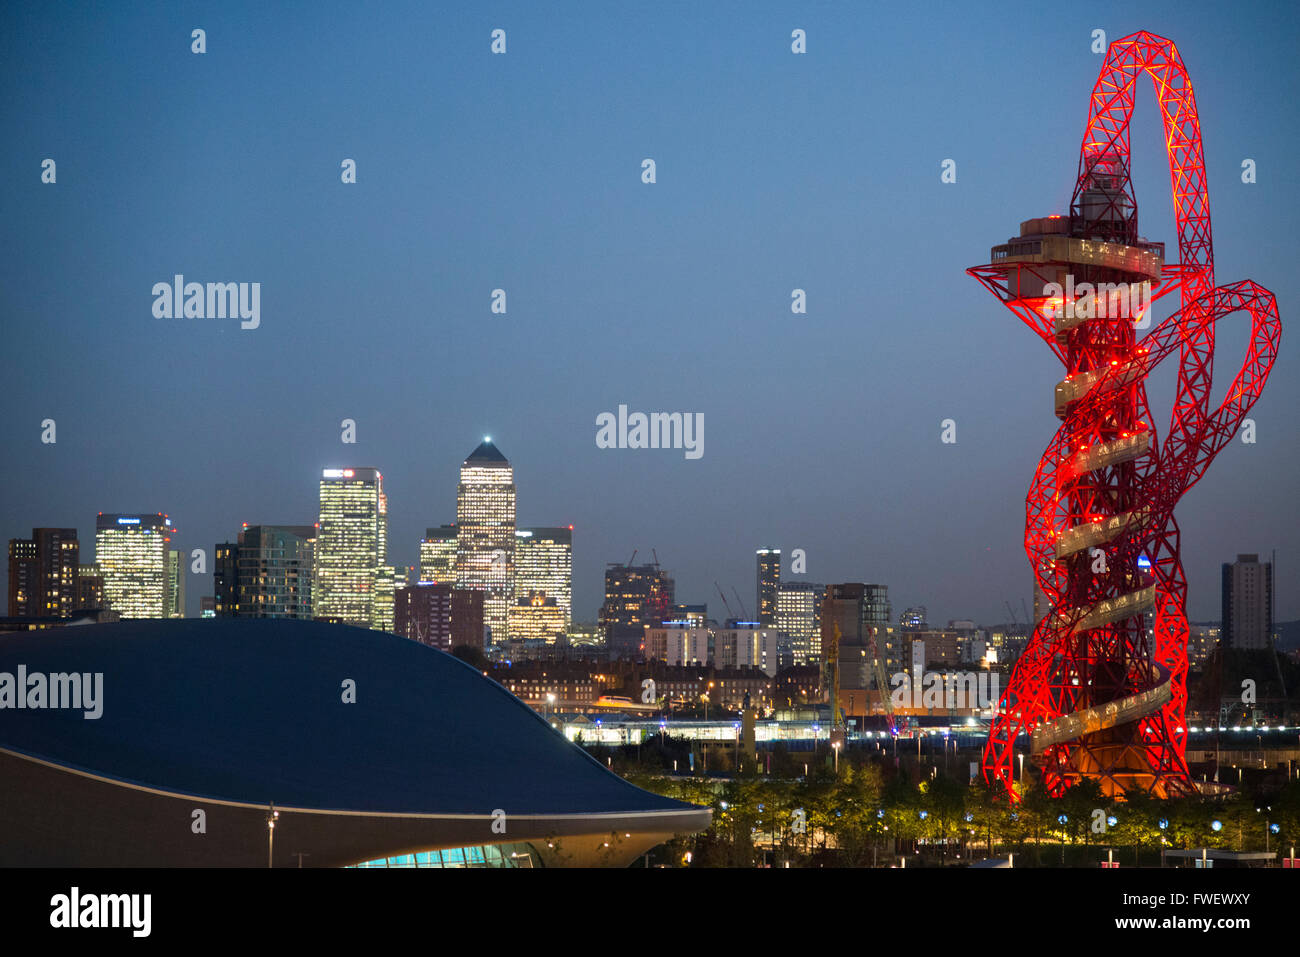 La tour Arcelormittal Orbit à Queen Elizabeth Olympic Park, au crépuscule, la ville de Stratford, London, Royaume-Uni, Europe Banque D'Images